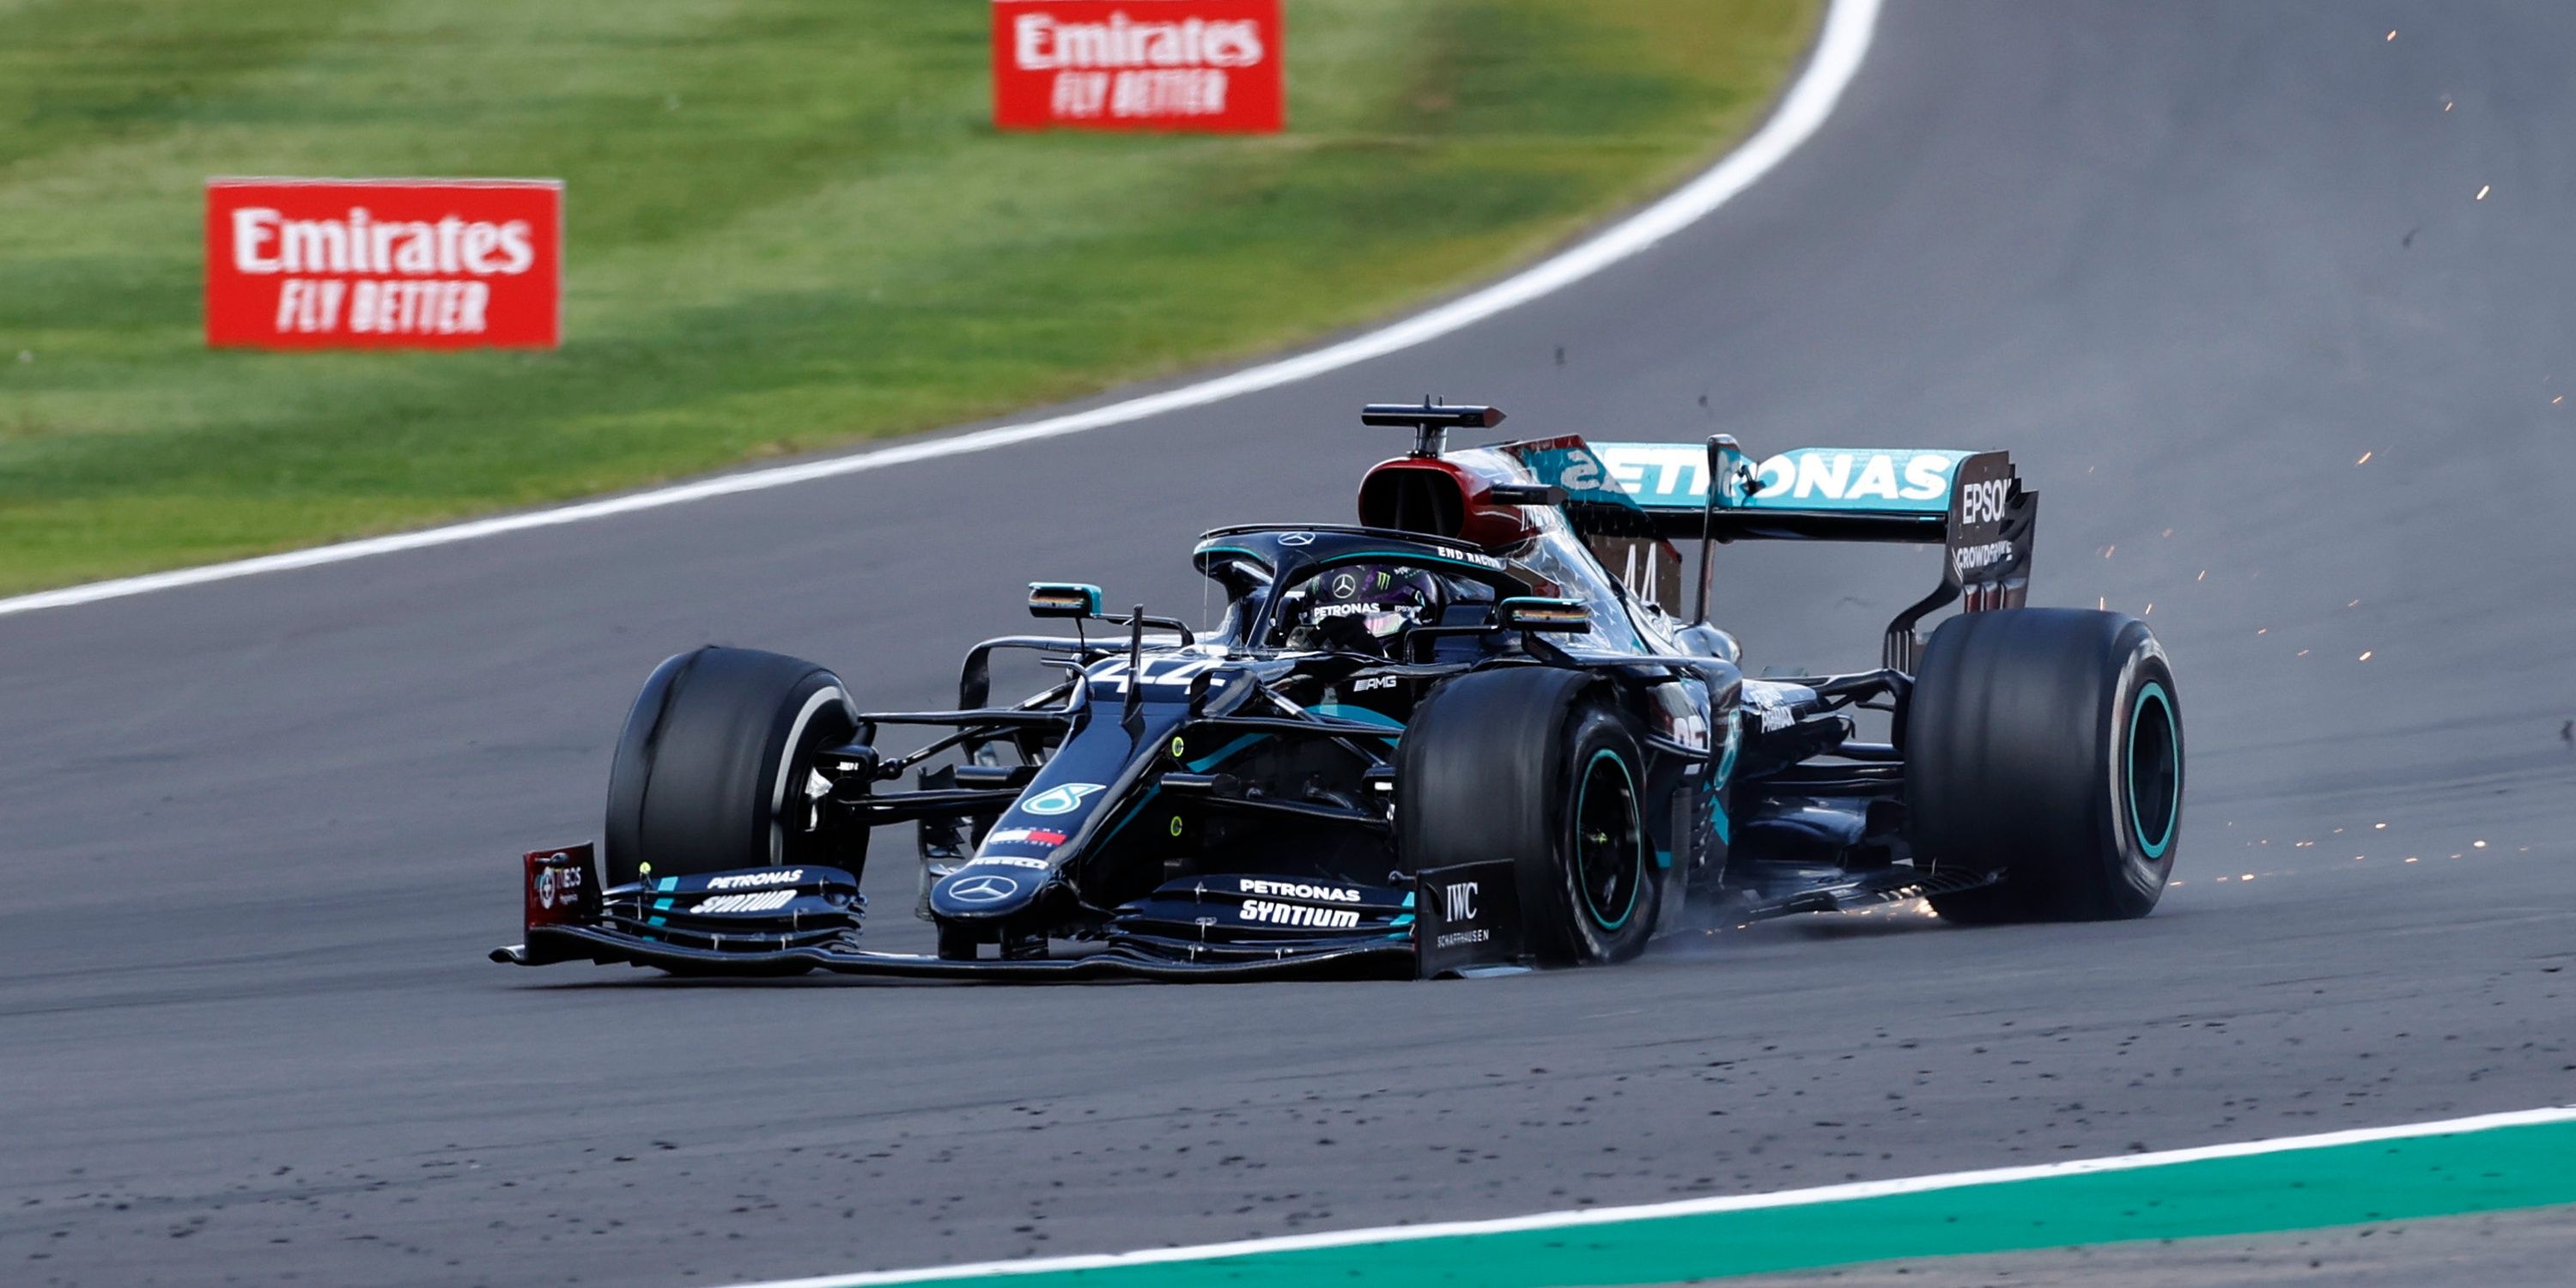 2020 British Grand Prix - Lewis Hamilton